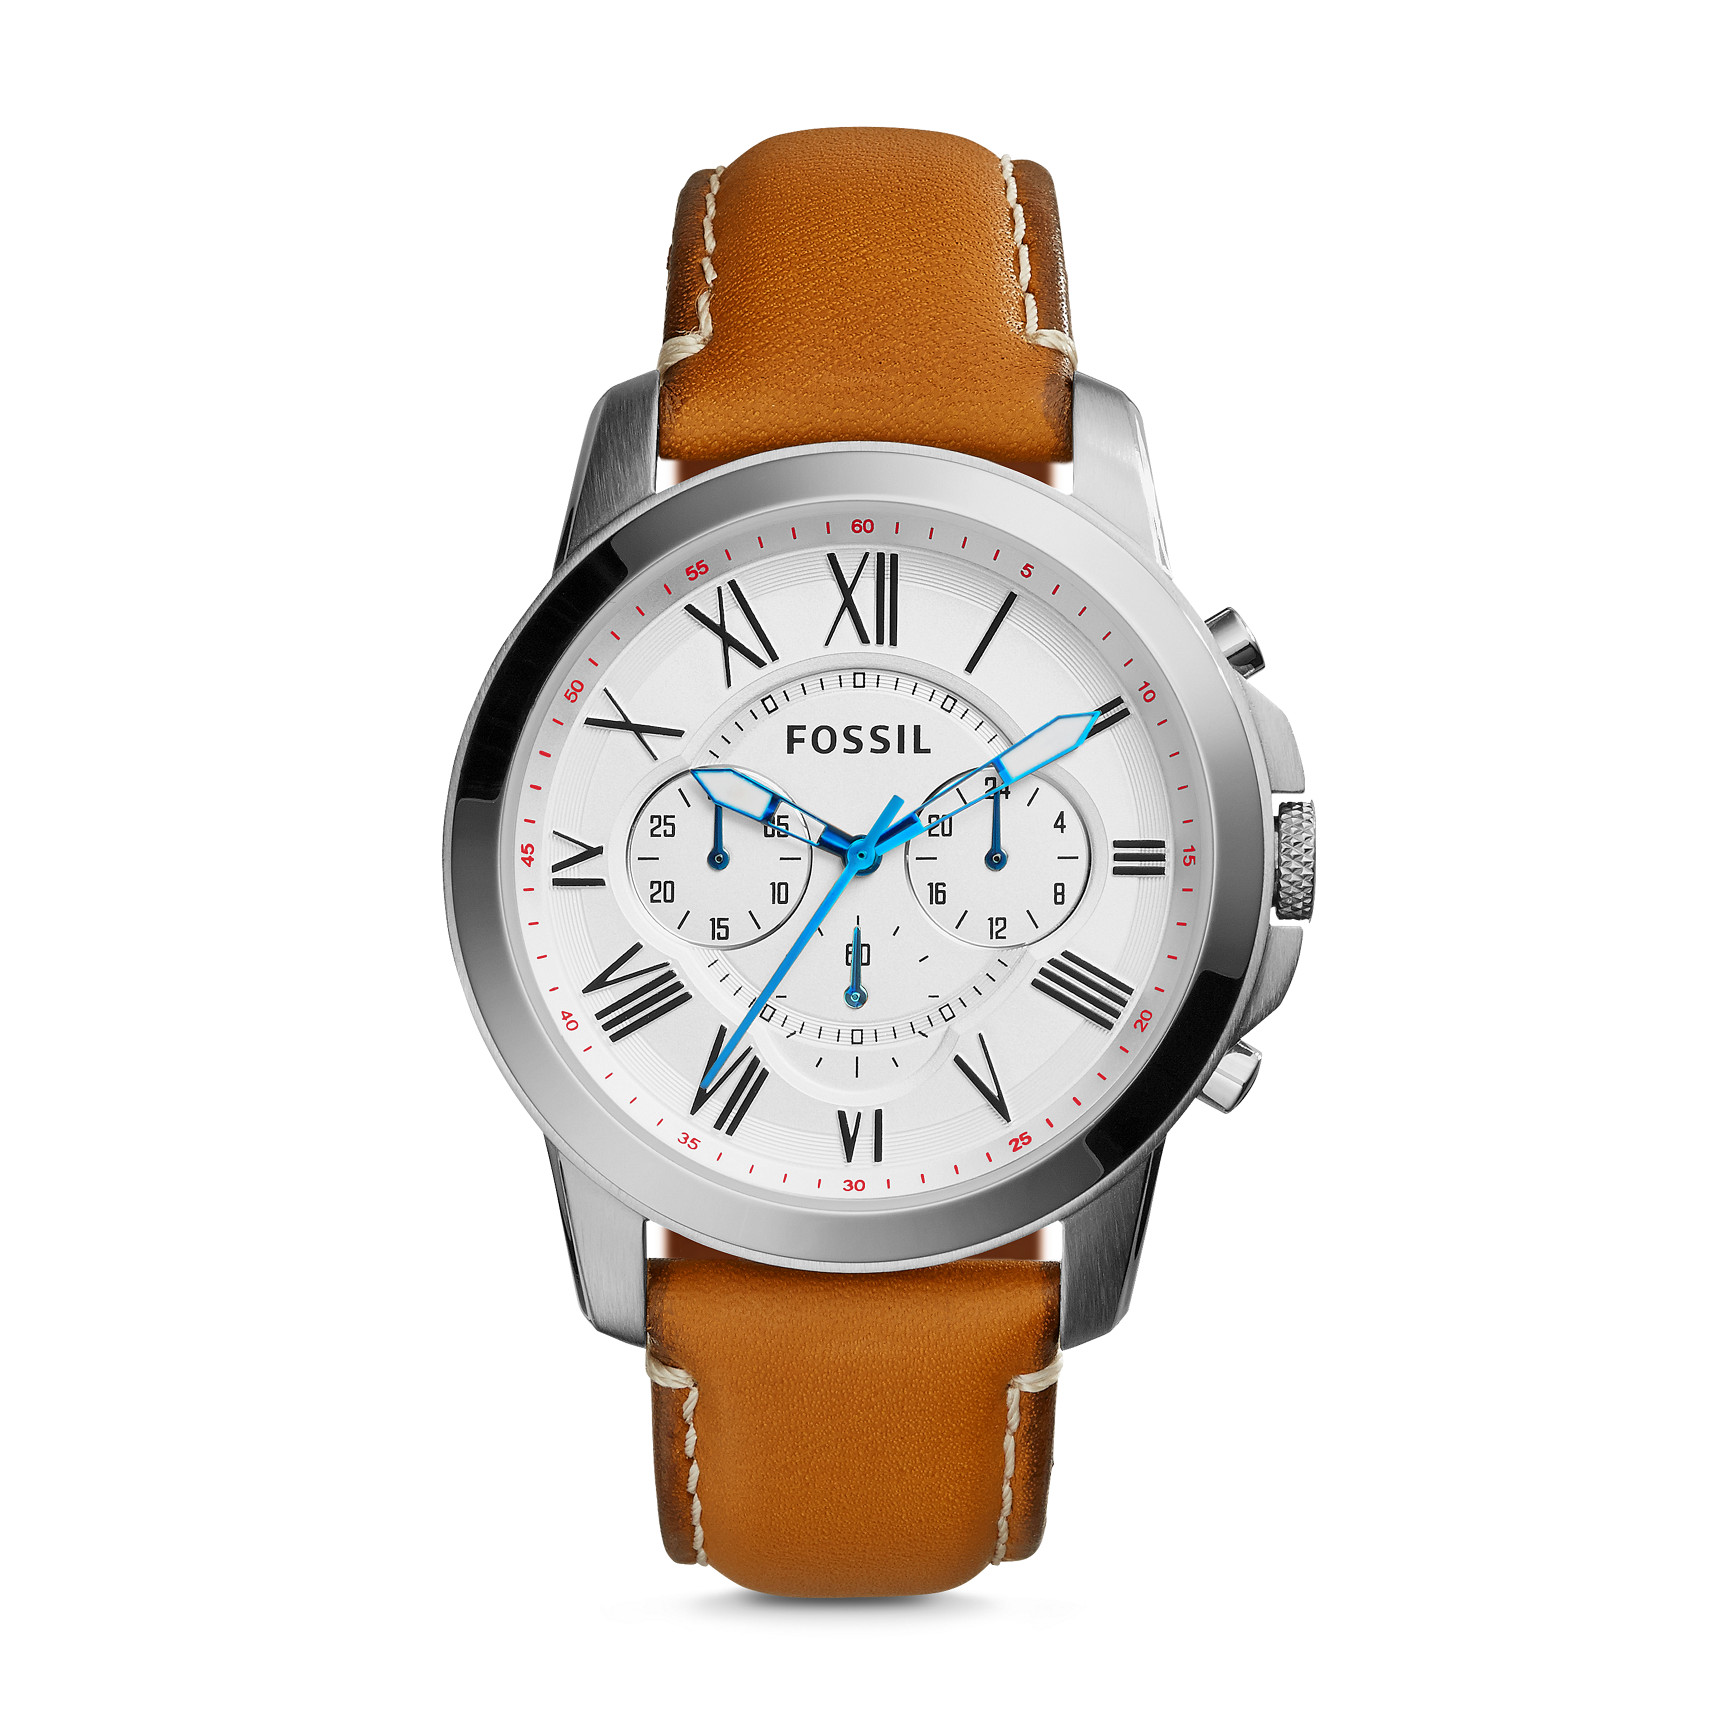 FOSSIL Grant Chronograph Leather Watch FS5060 - FUORI PRODUZIONE